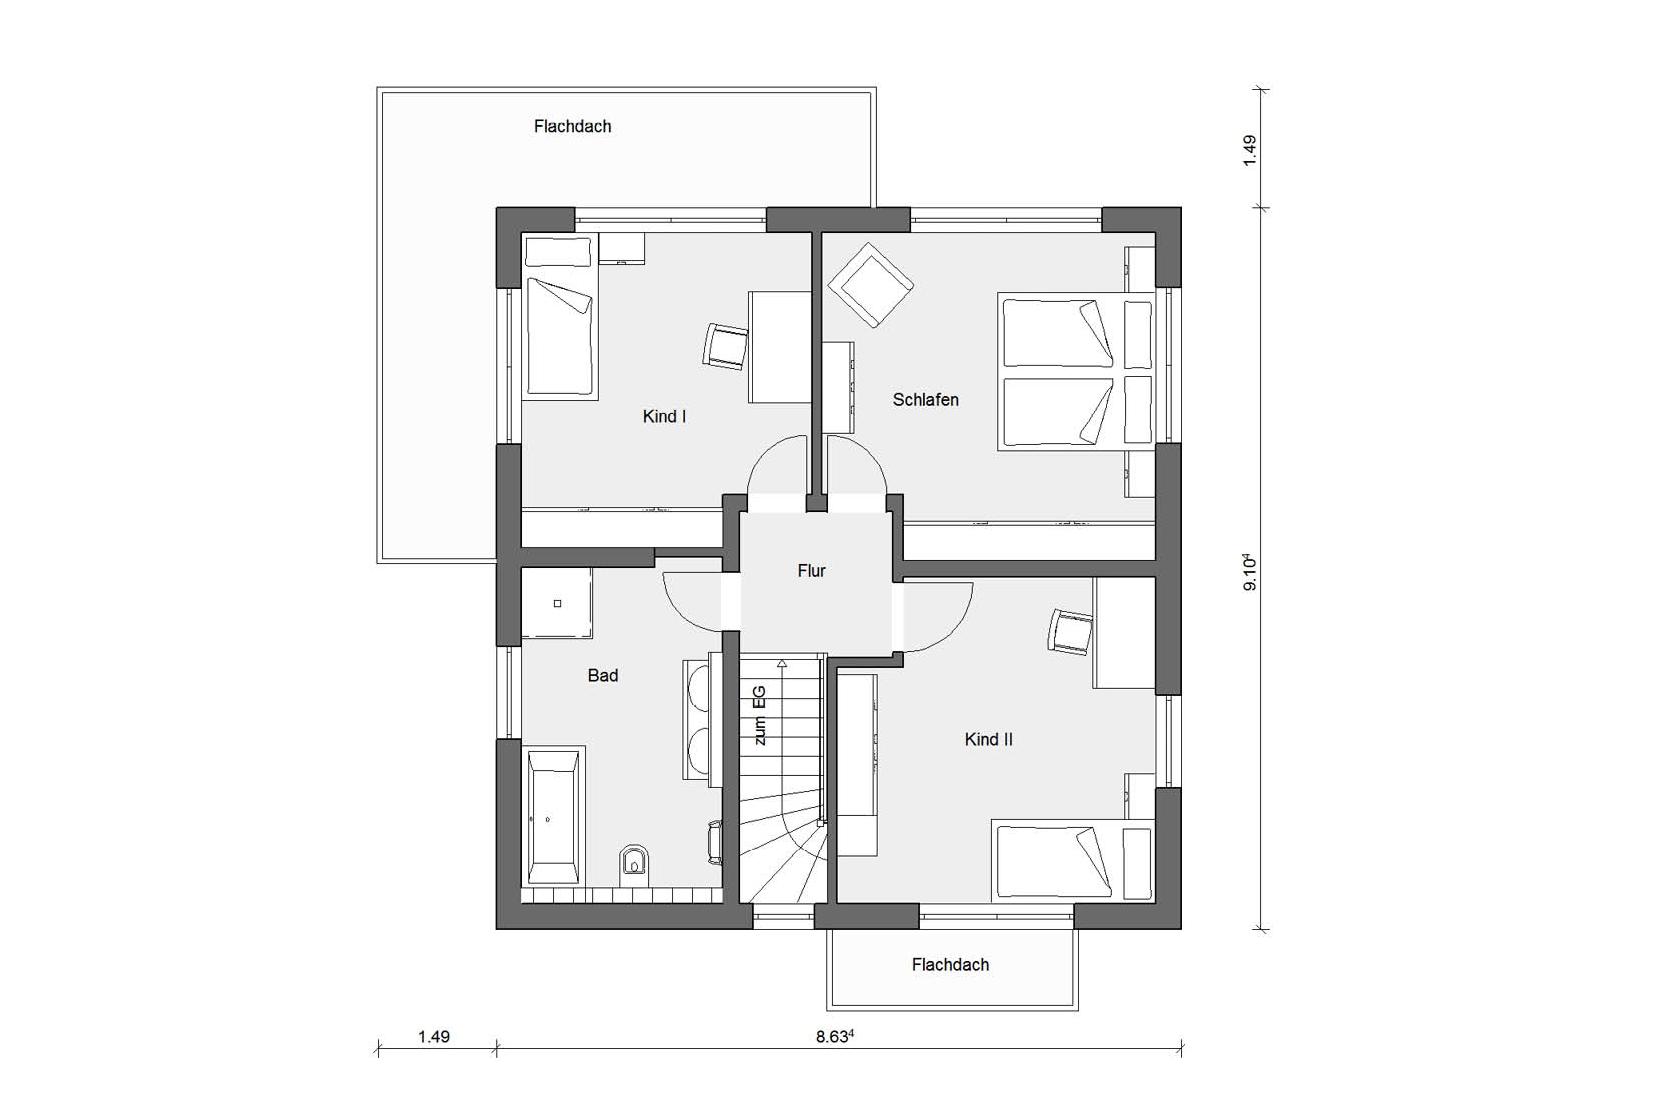 Plan d'étage grenier E 20-142.3 Maison préfabriquée de style Bauhaus